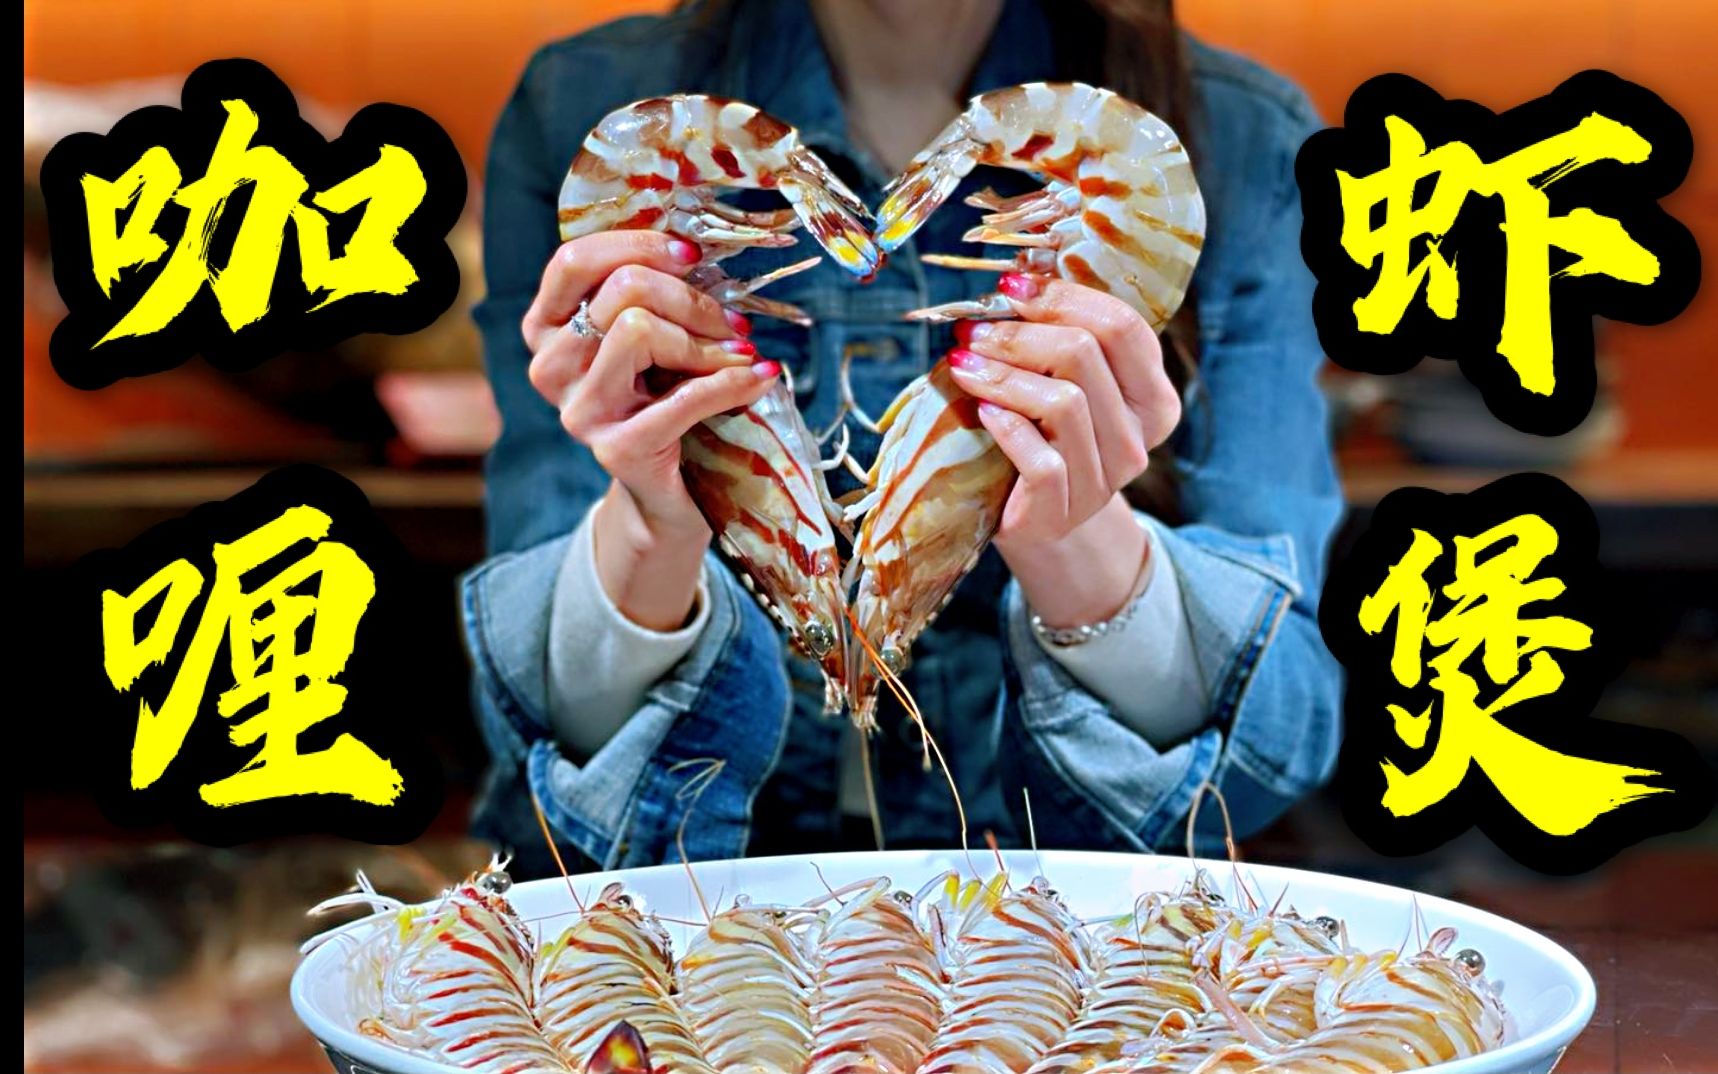 手臂粗的斑节虾做成咖喱粉丝虾煲，满满都是爱你的形状~~~S2108-HA255